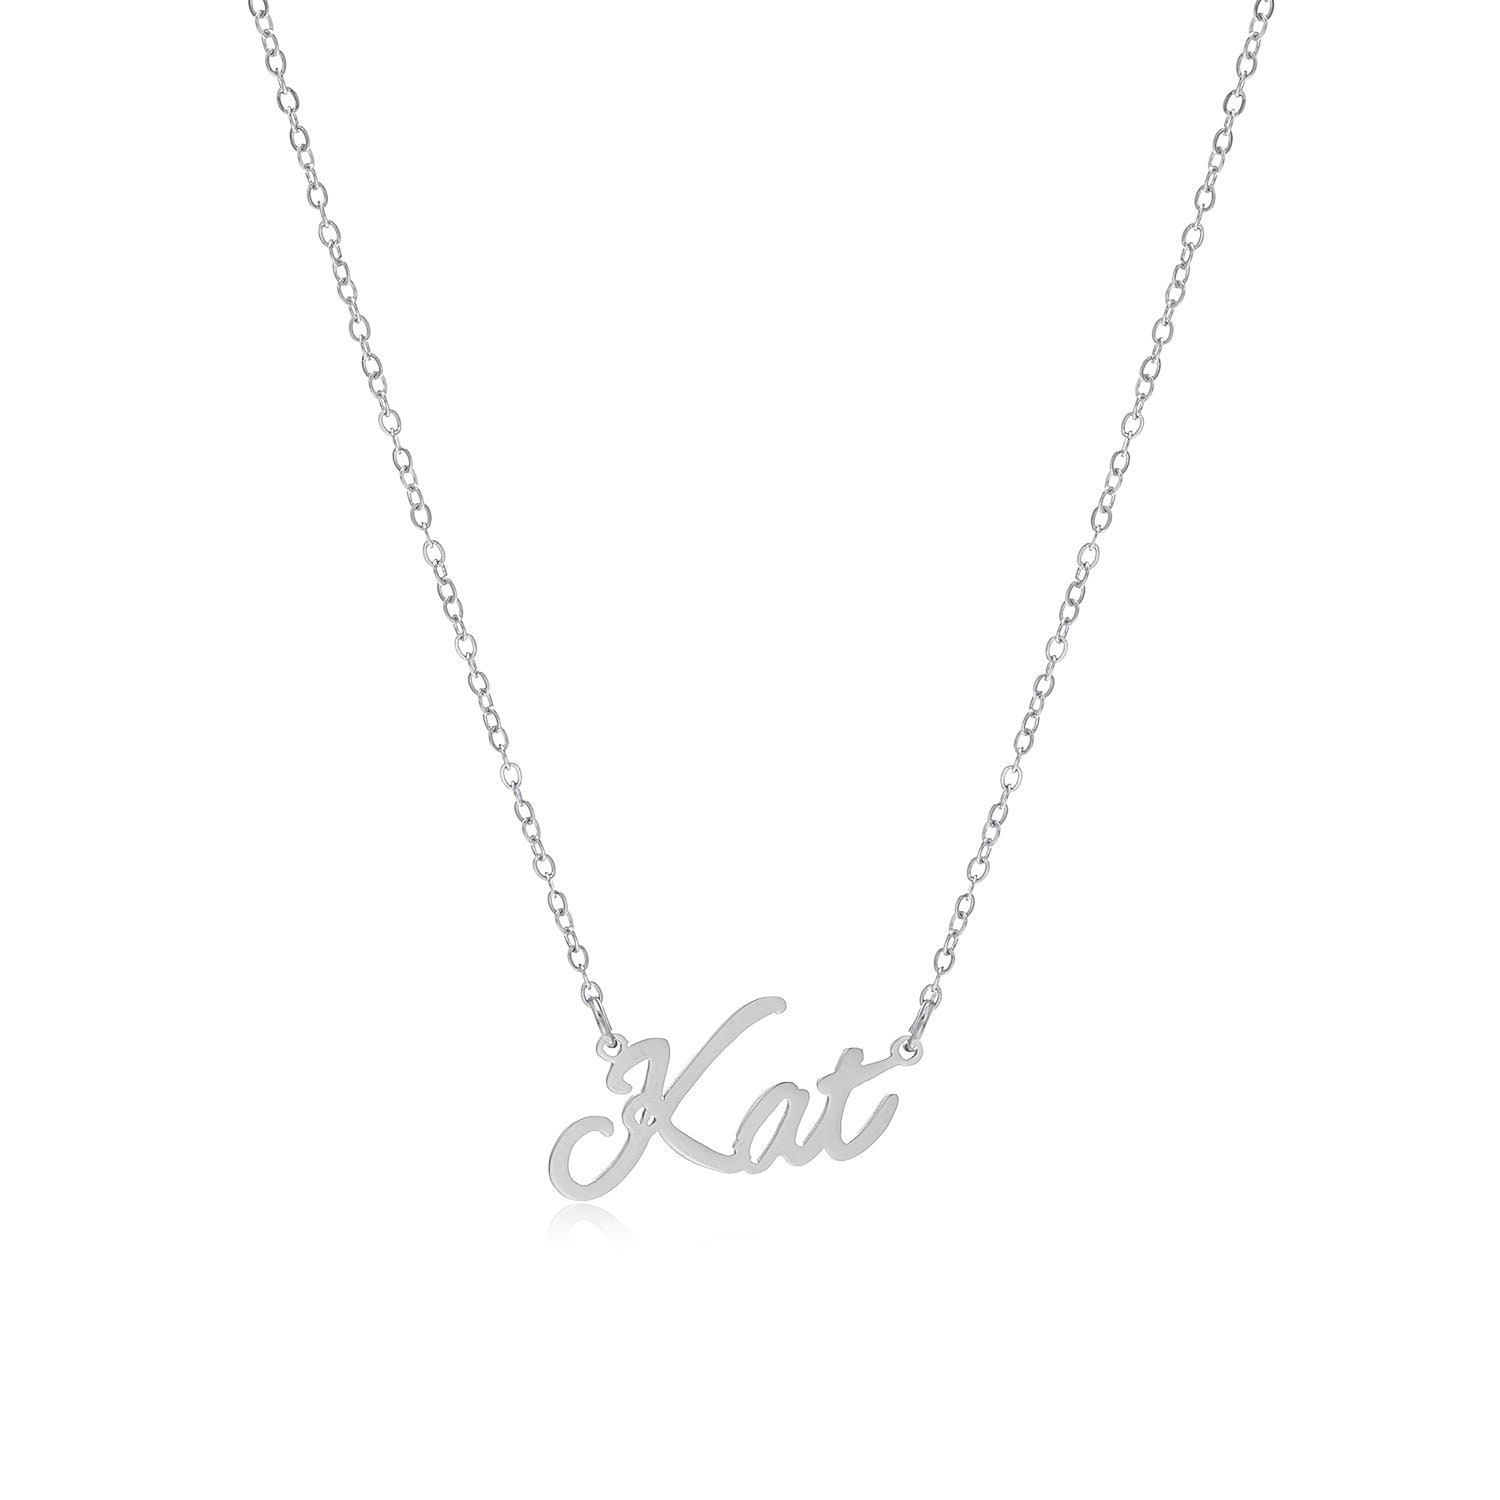 at opfinde Gøre mit bedste Held og lykke Kat Name Necklace Stainless Steel in Colour Silver - Etsy